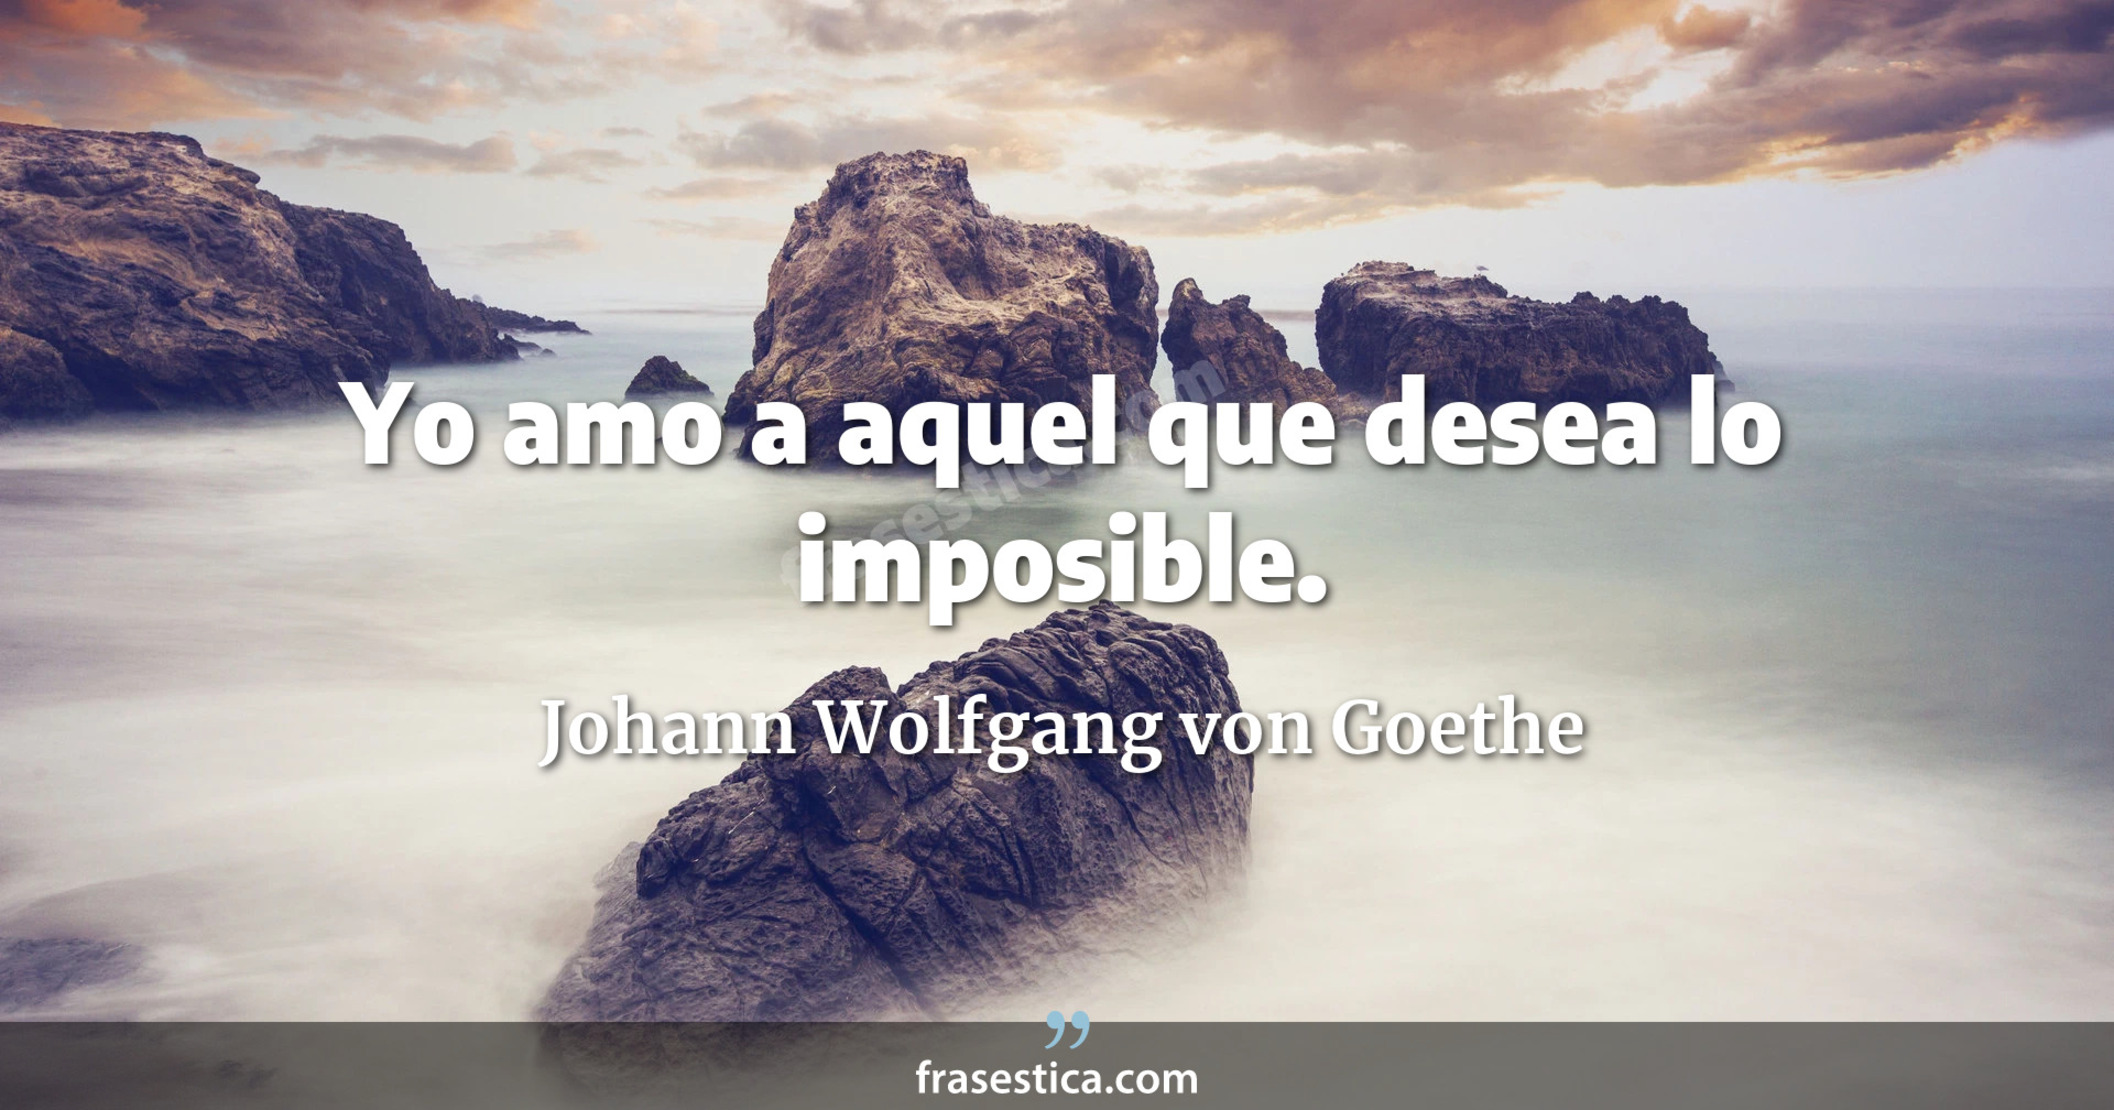 Yo amo a aquel que desea lo imposible. - Johann Wolfgang von Goethe